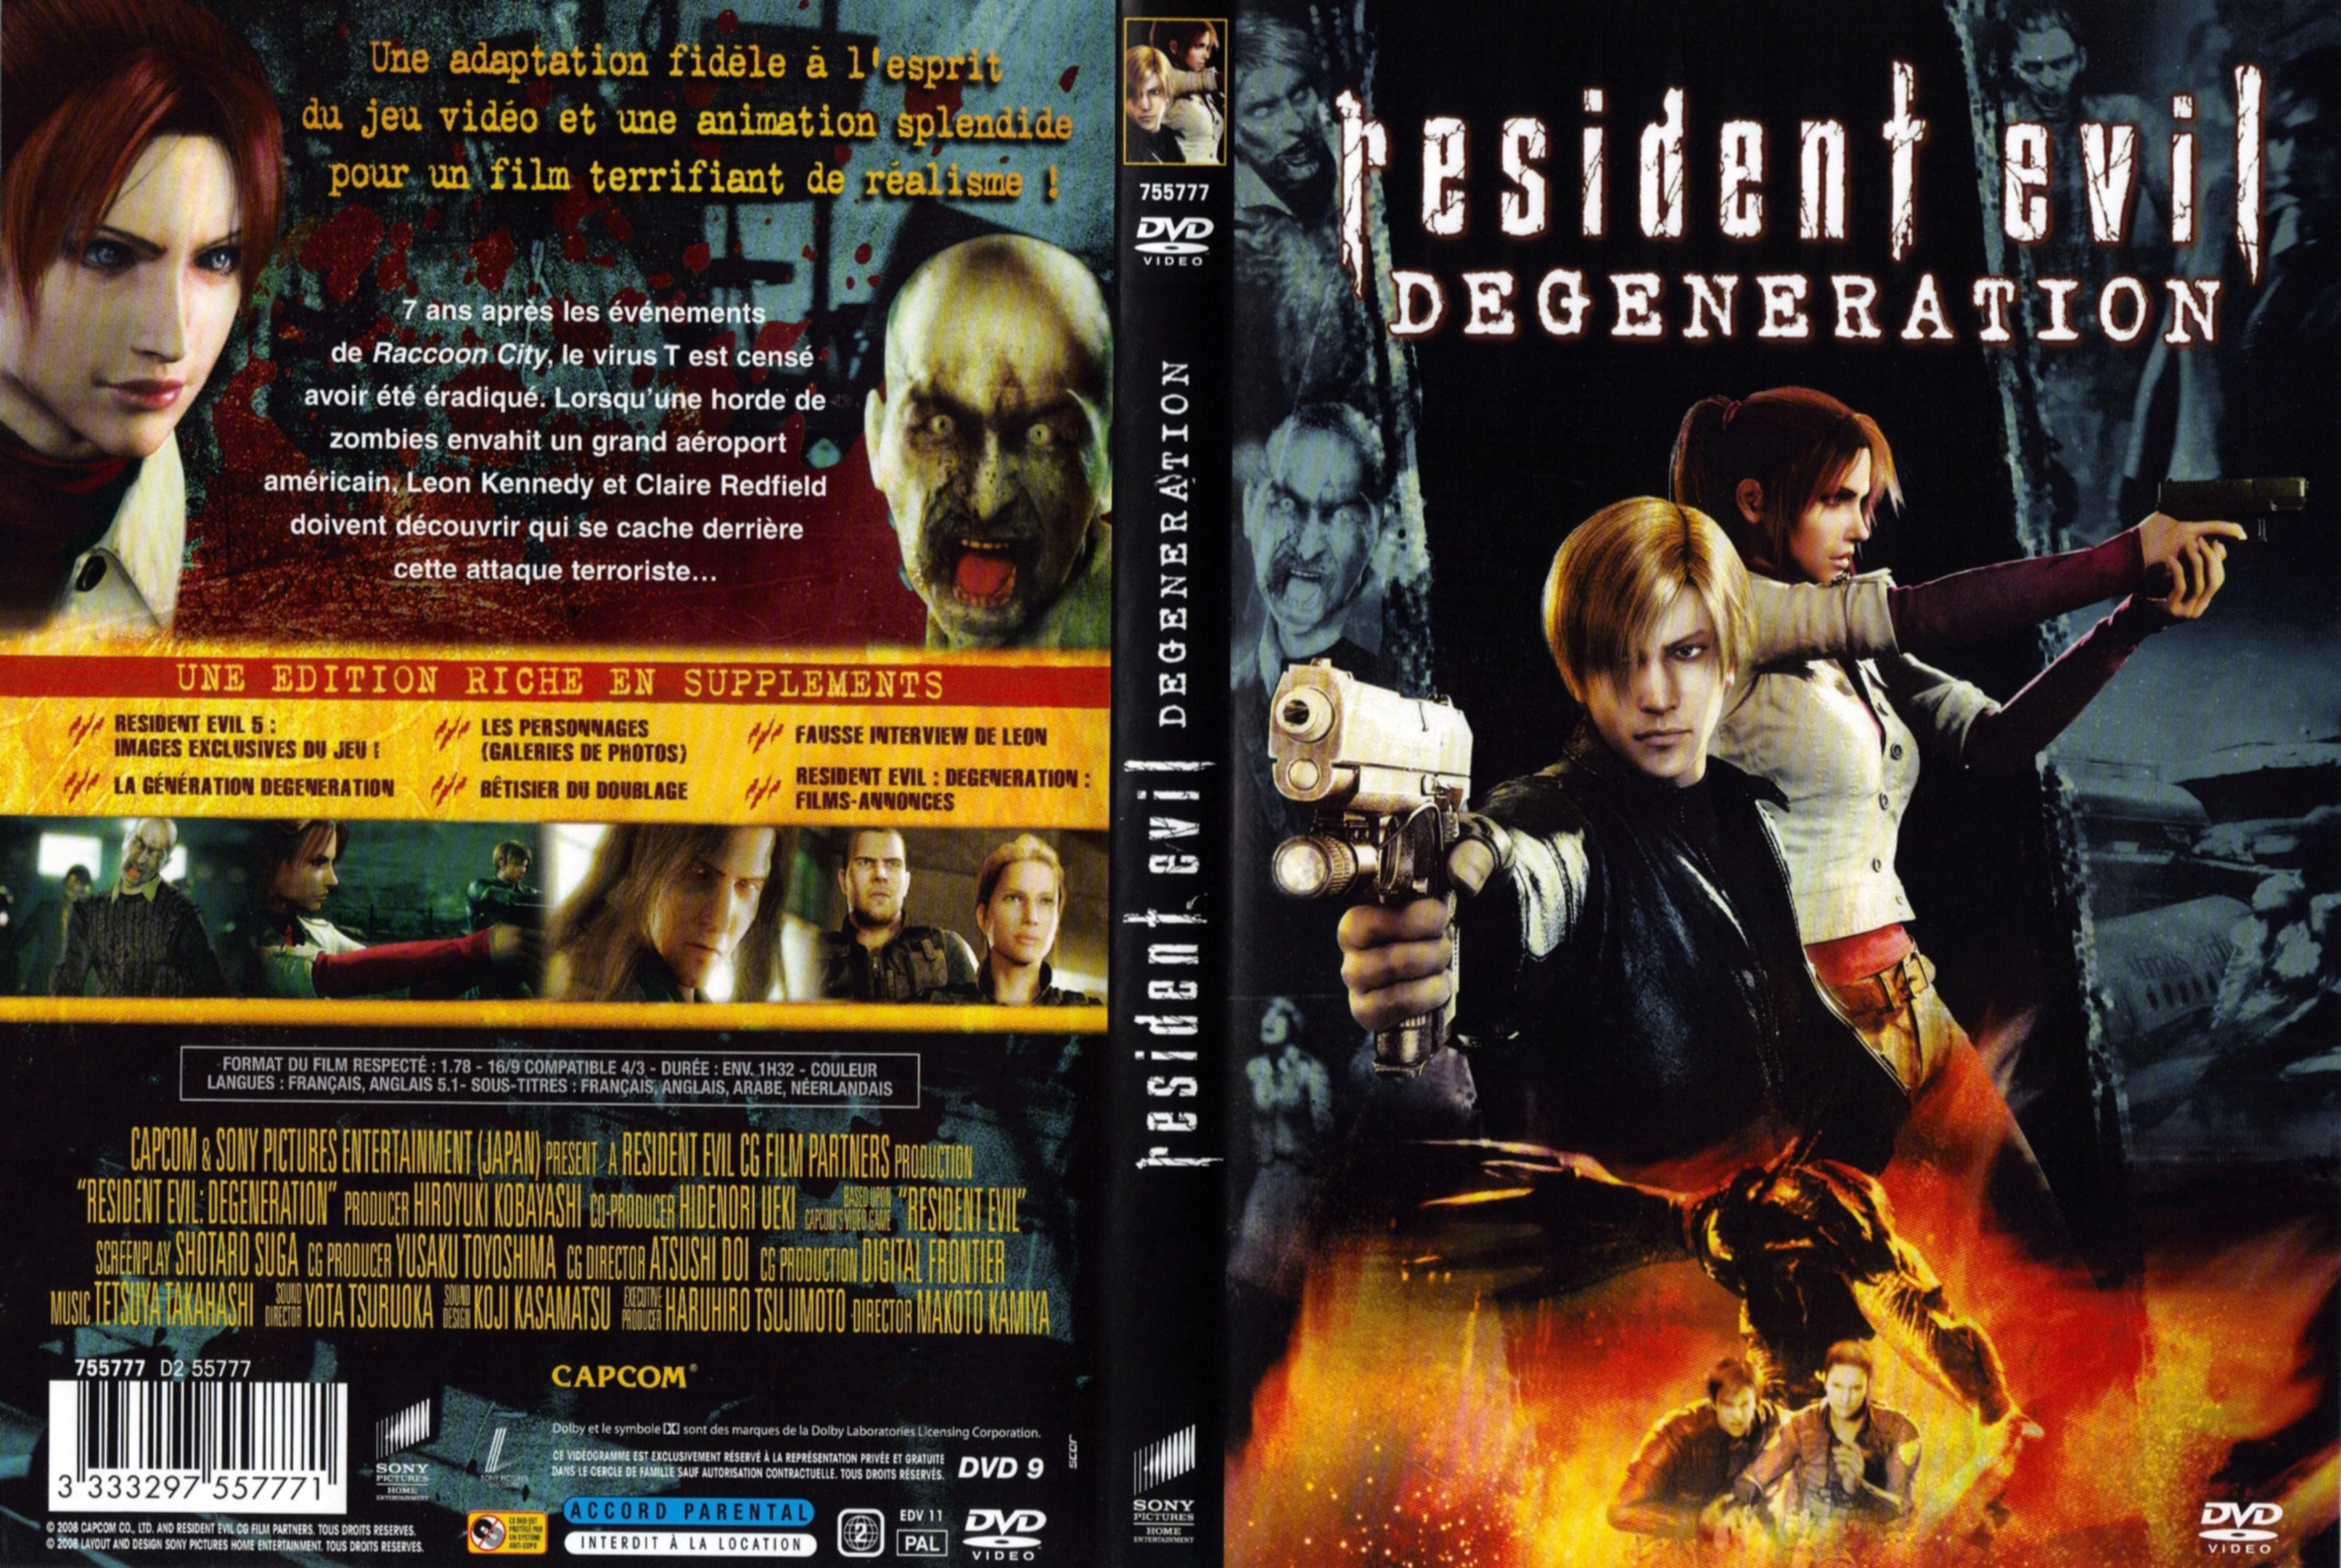 Jaquette DVD Resident evil Degeneration